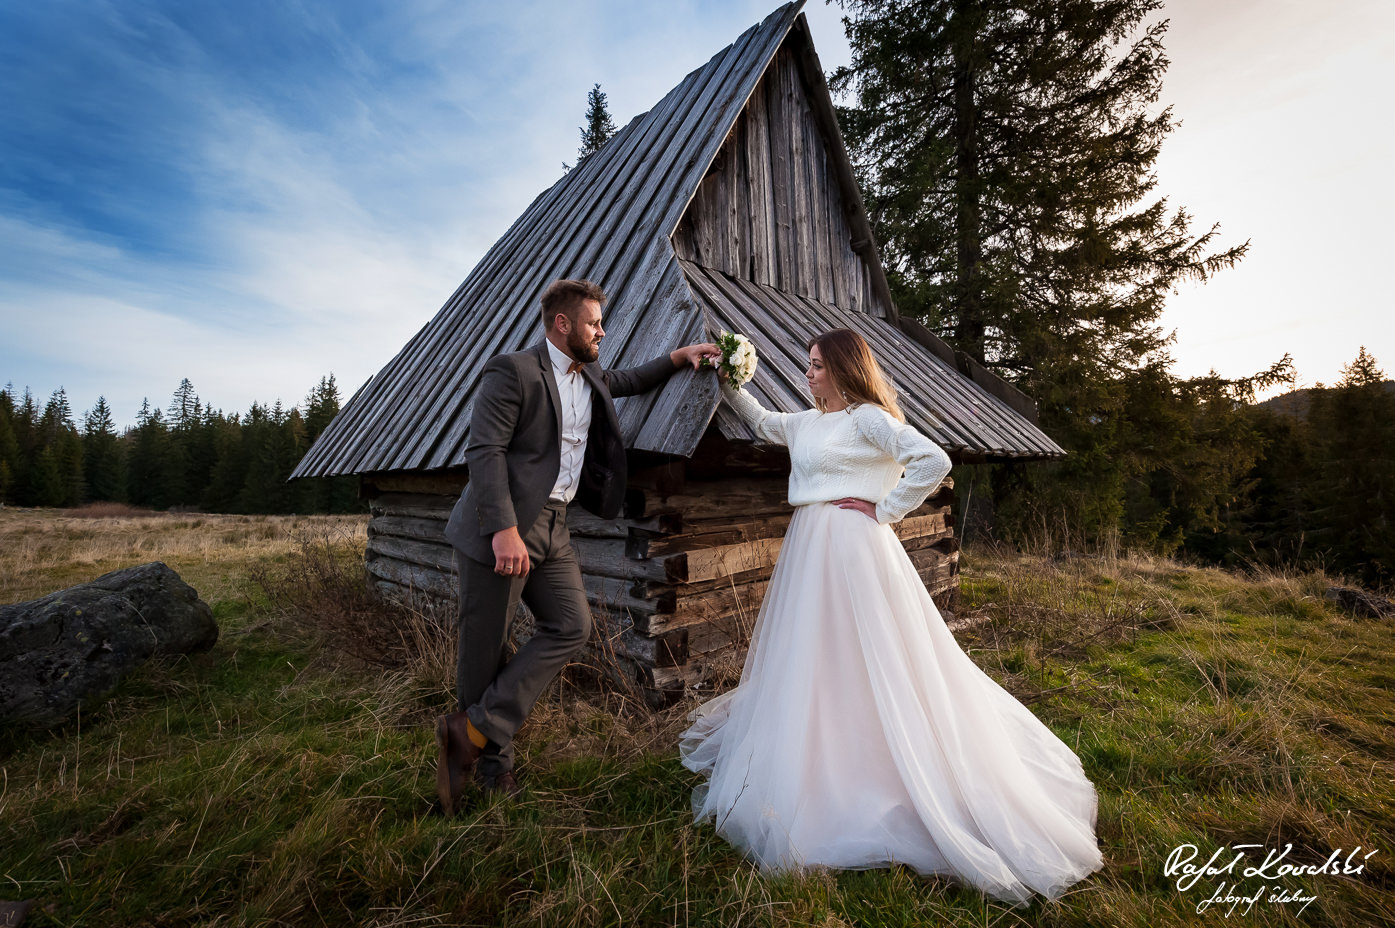 ujęcie szerokokątnym obiektywem na sesji ślubnej w Tatrach